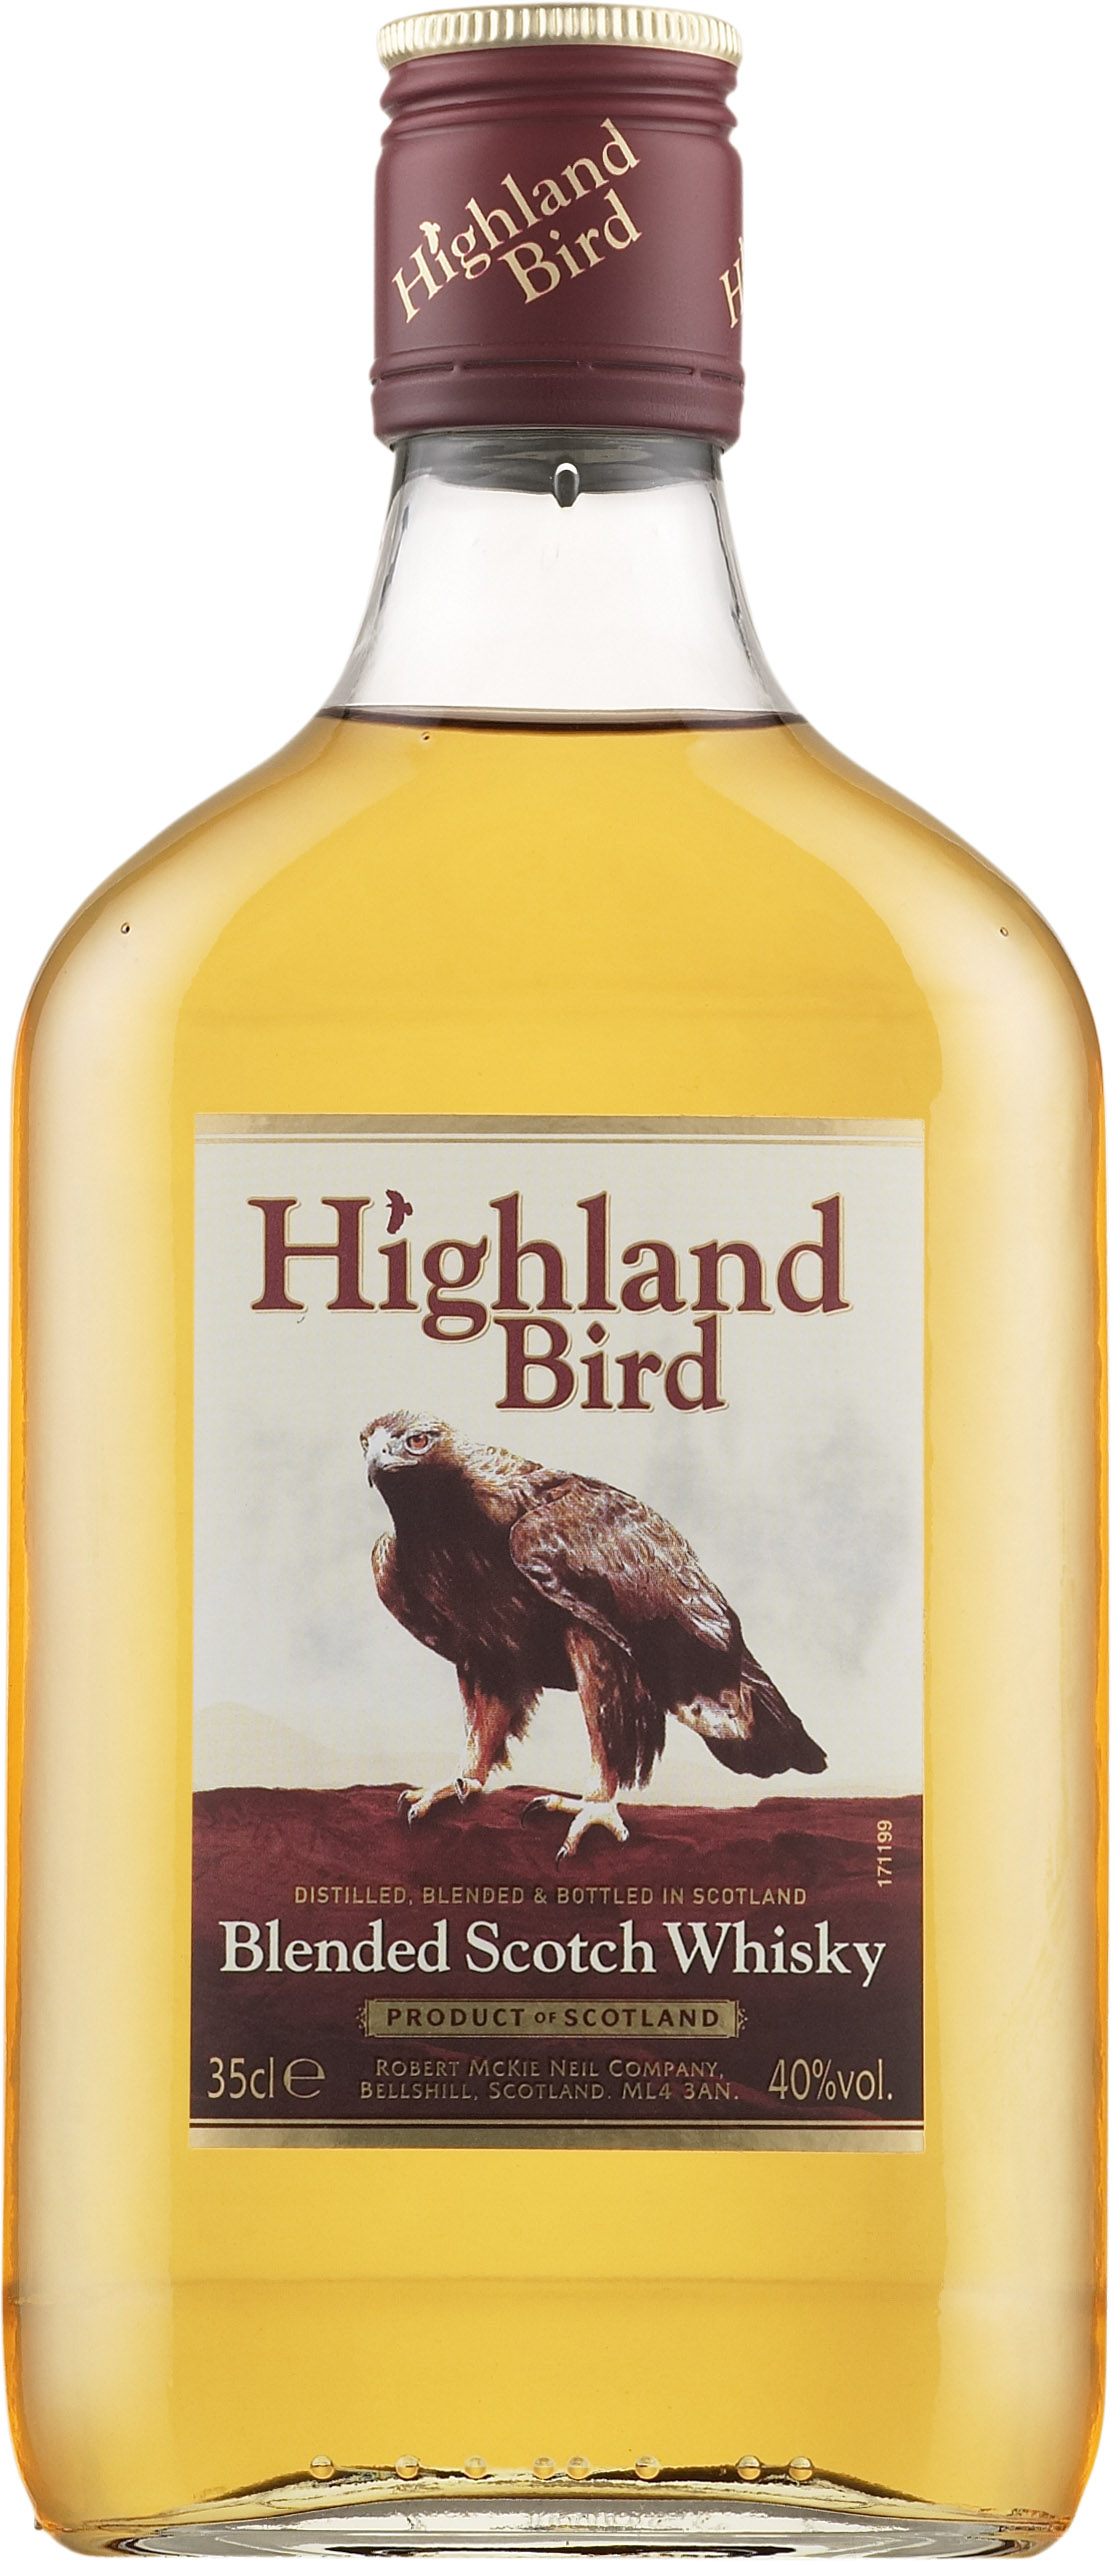 Highland Bird Blended Scotch Whisky